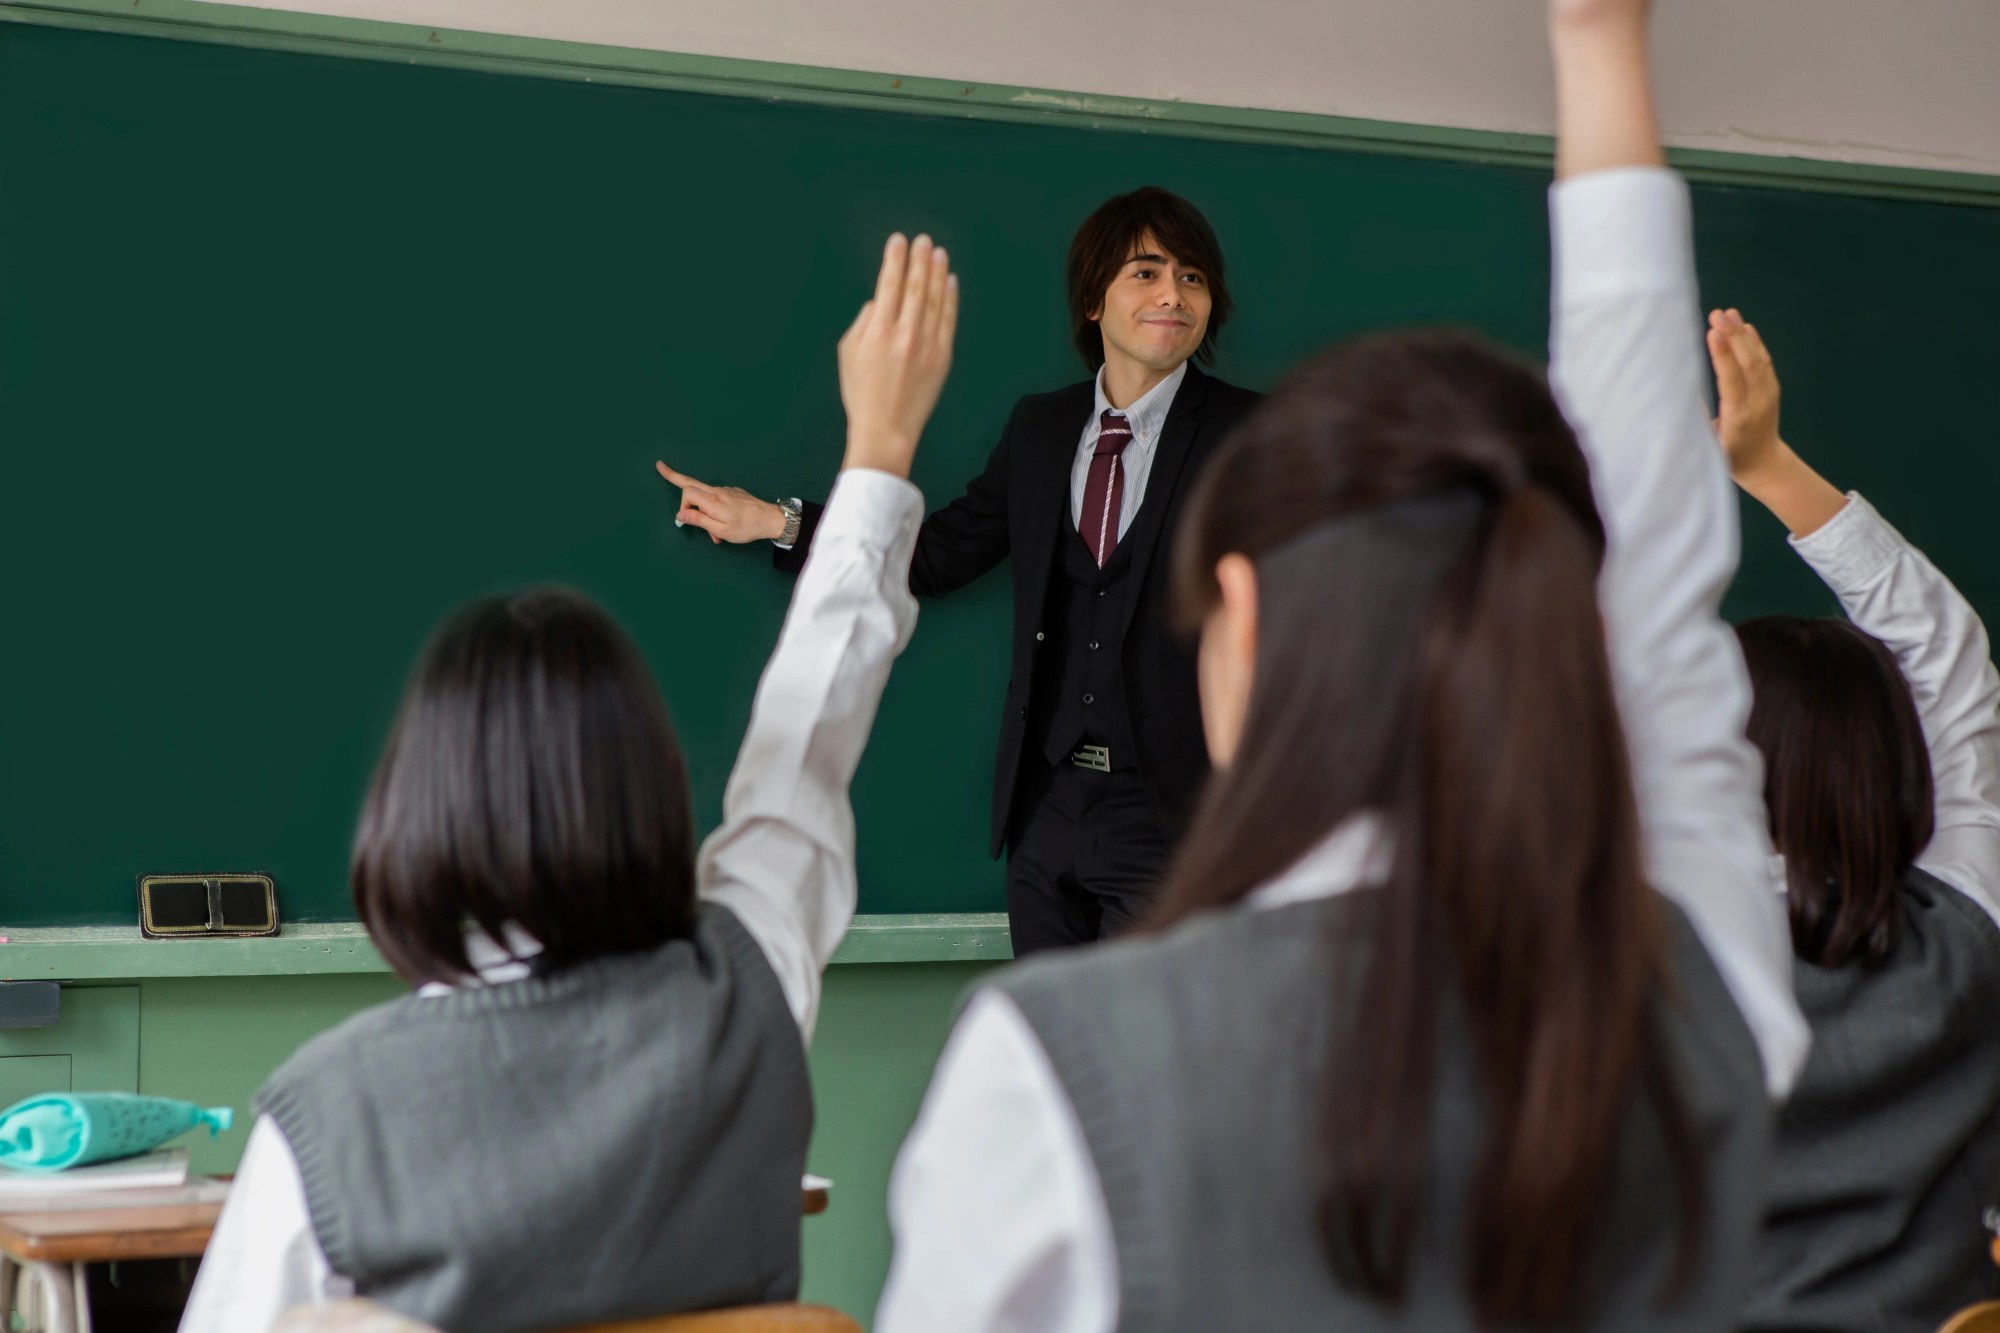 「授業」のイメージ_板書する男性教師と、手をあげる学生